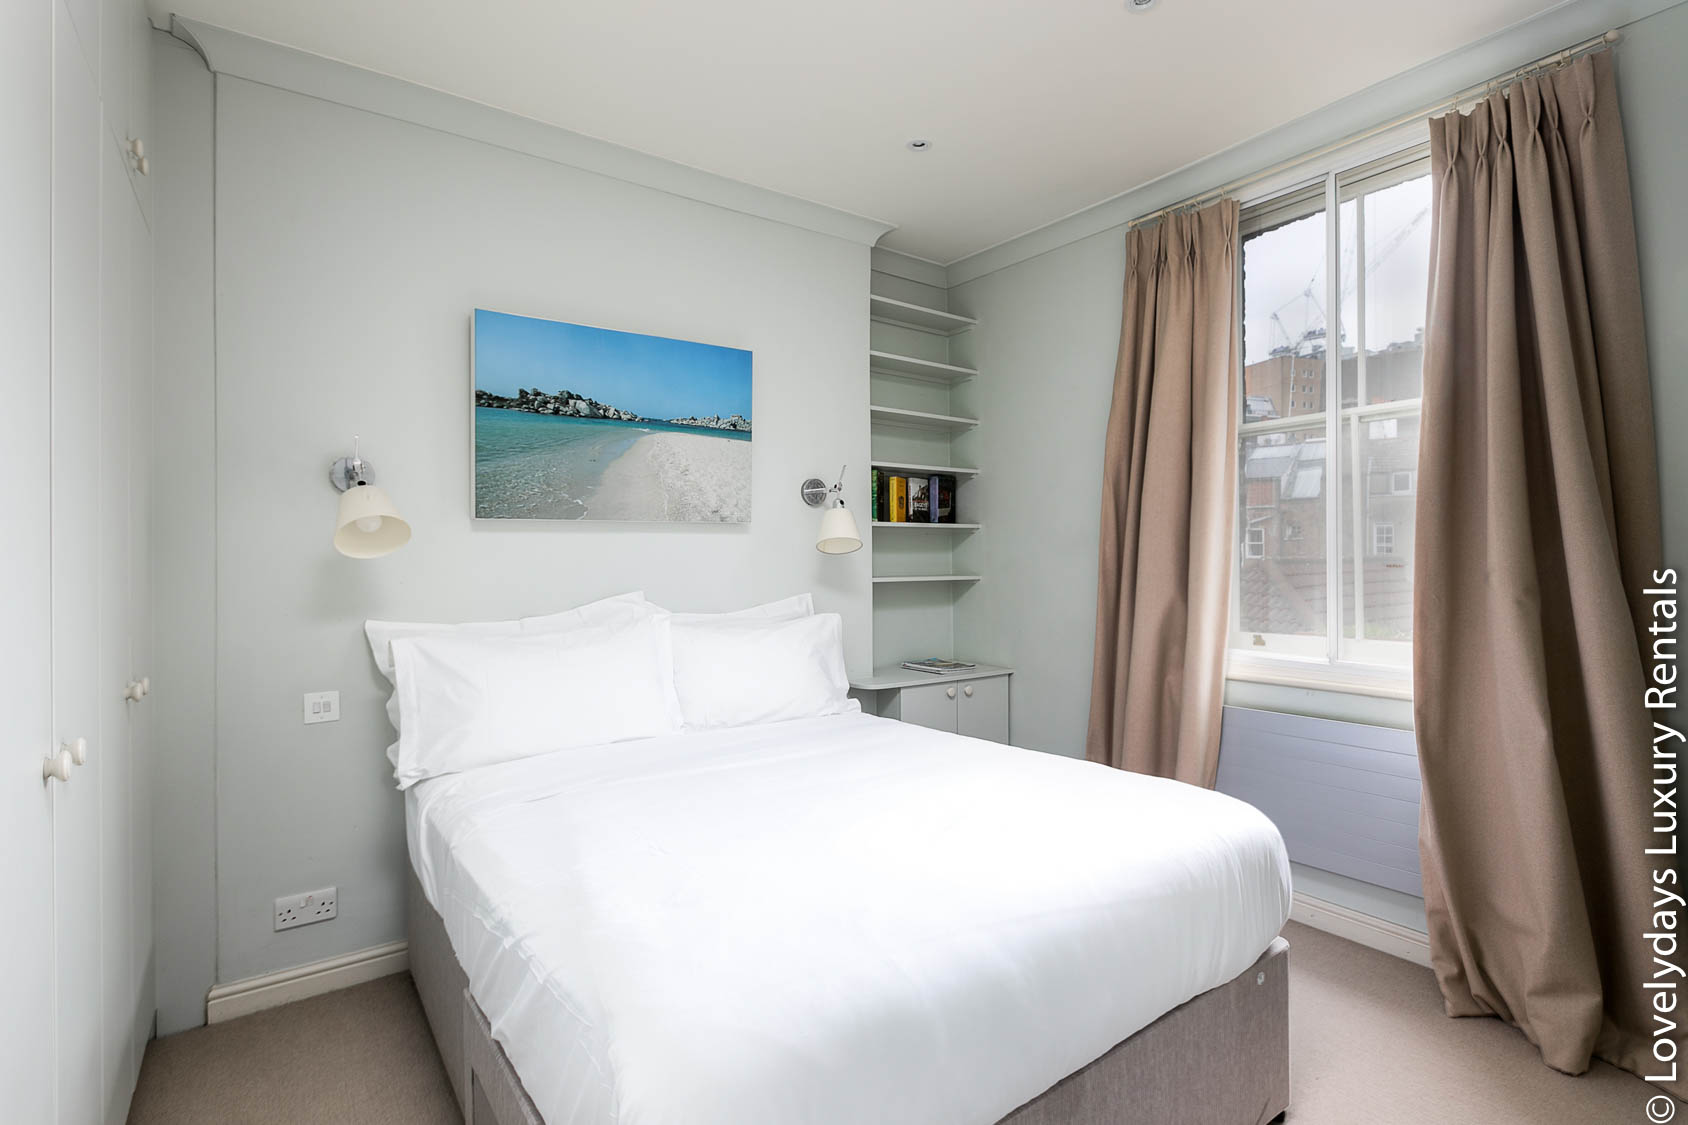 Lovelydays luxury service apartment rental - London - Covent Garden - Neal Street - Lovelysuite - 2 bedrooms - 1 bathrooms - Double bed - 588d3b38eb18 - Lovelydays